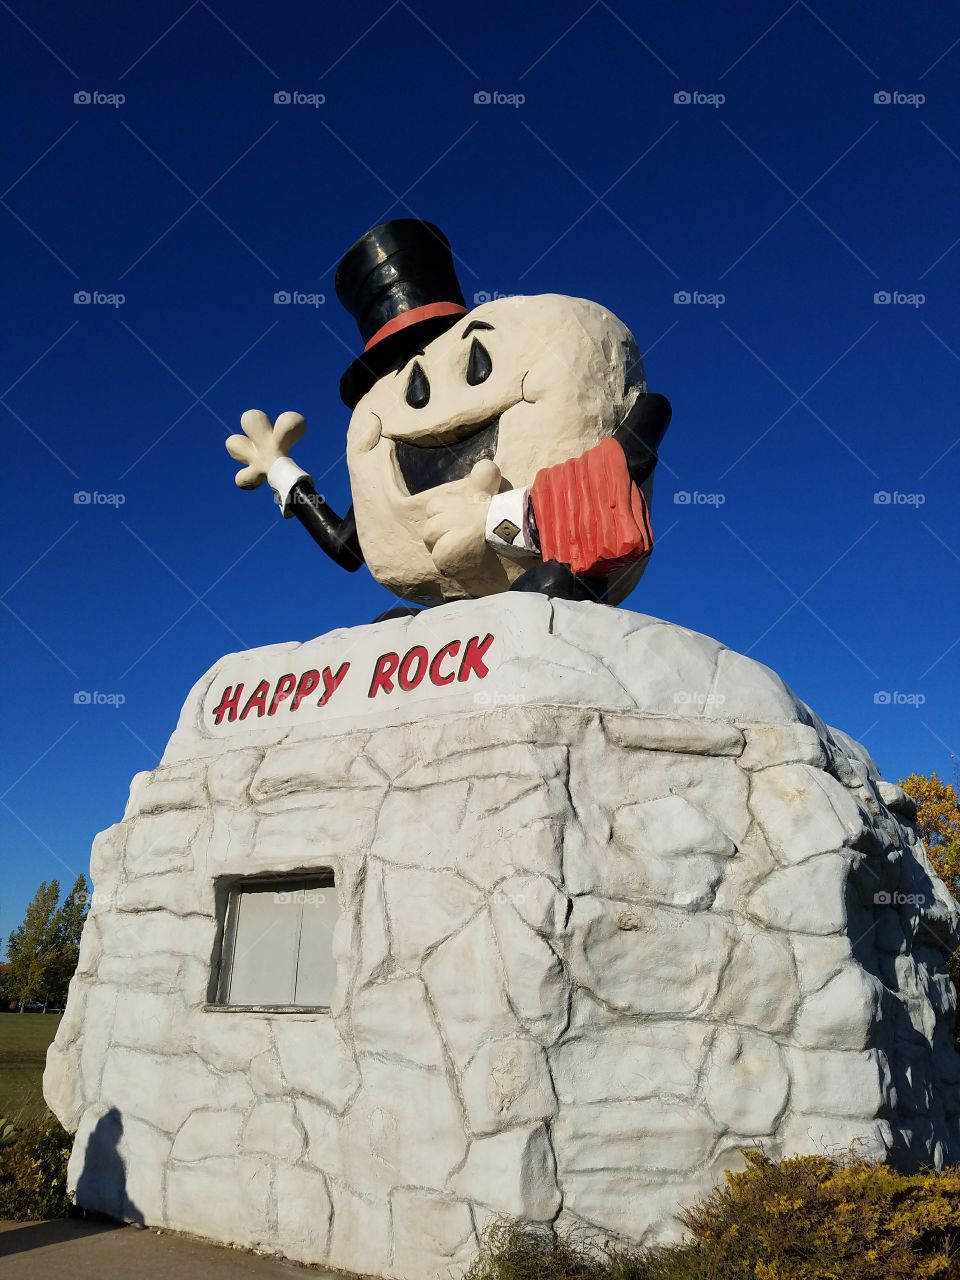 The Happy Rock